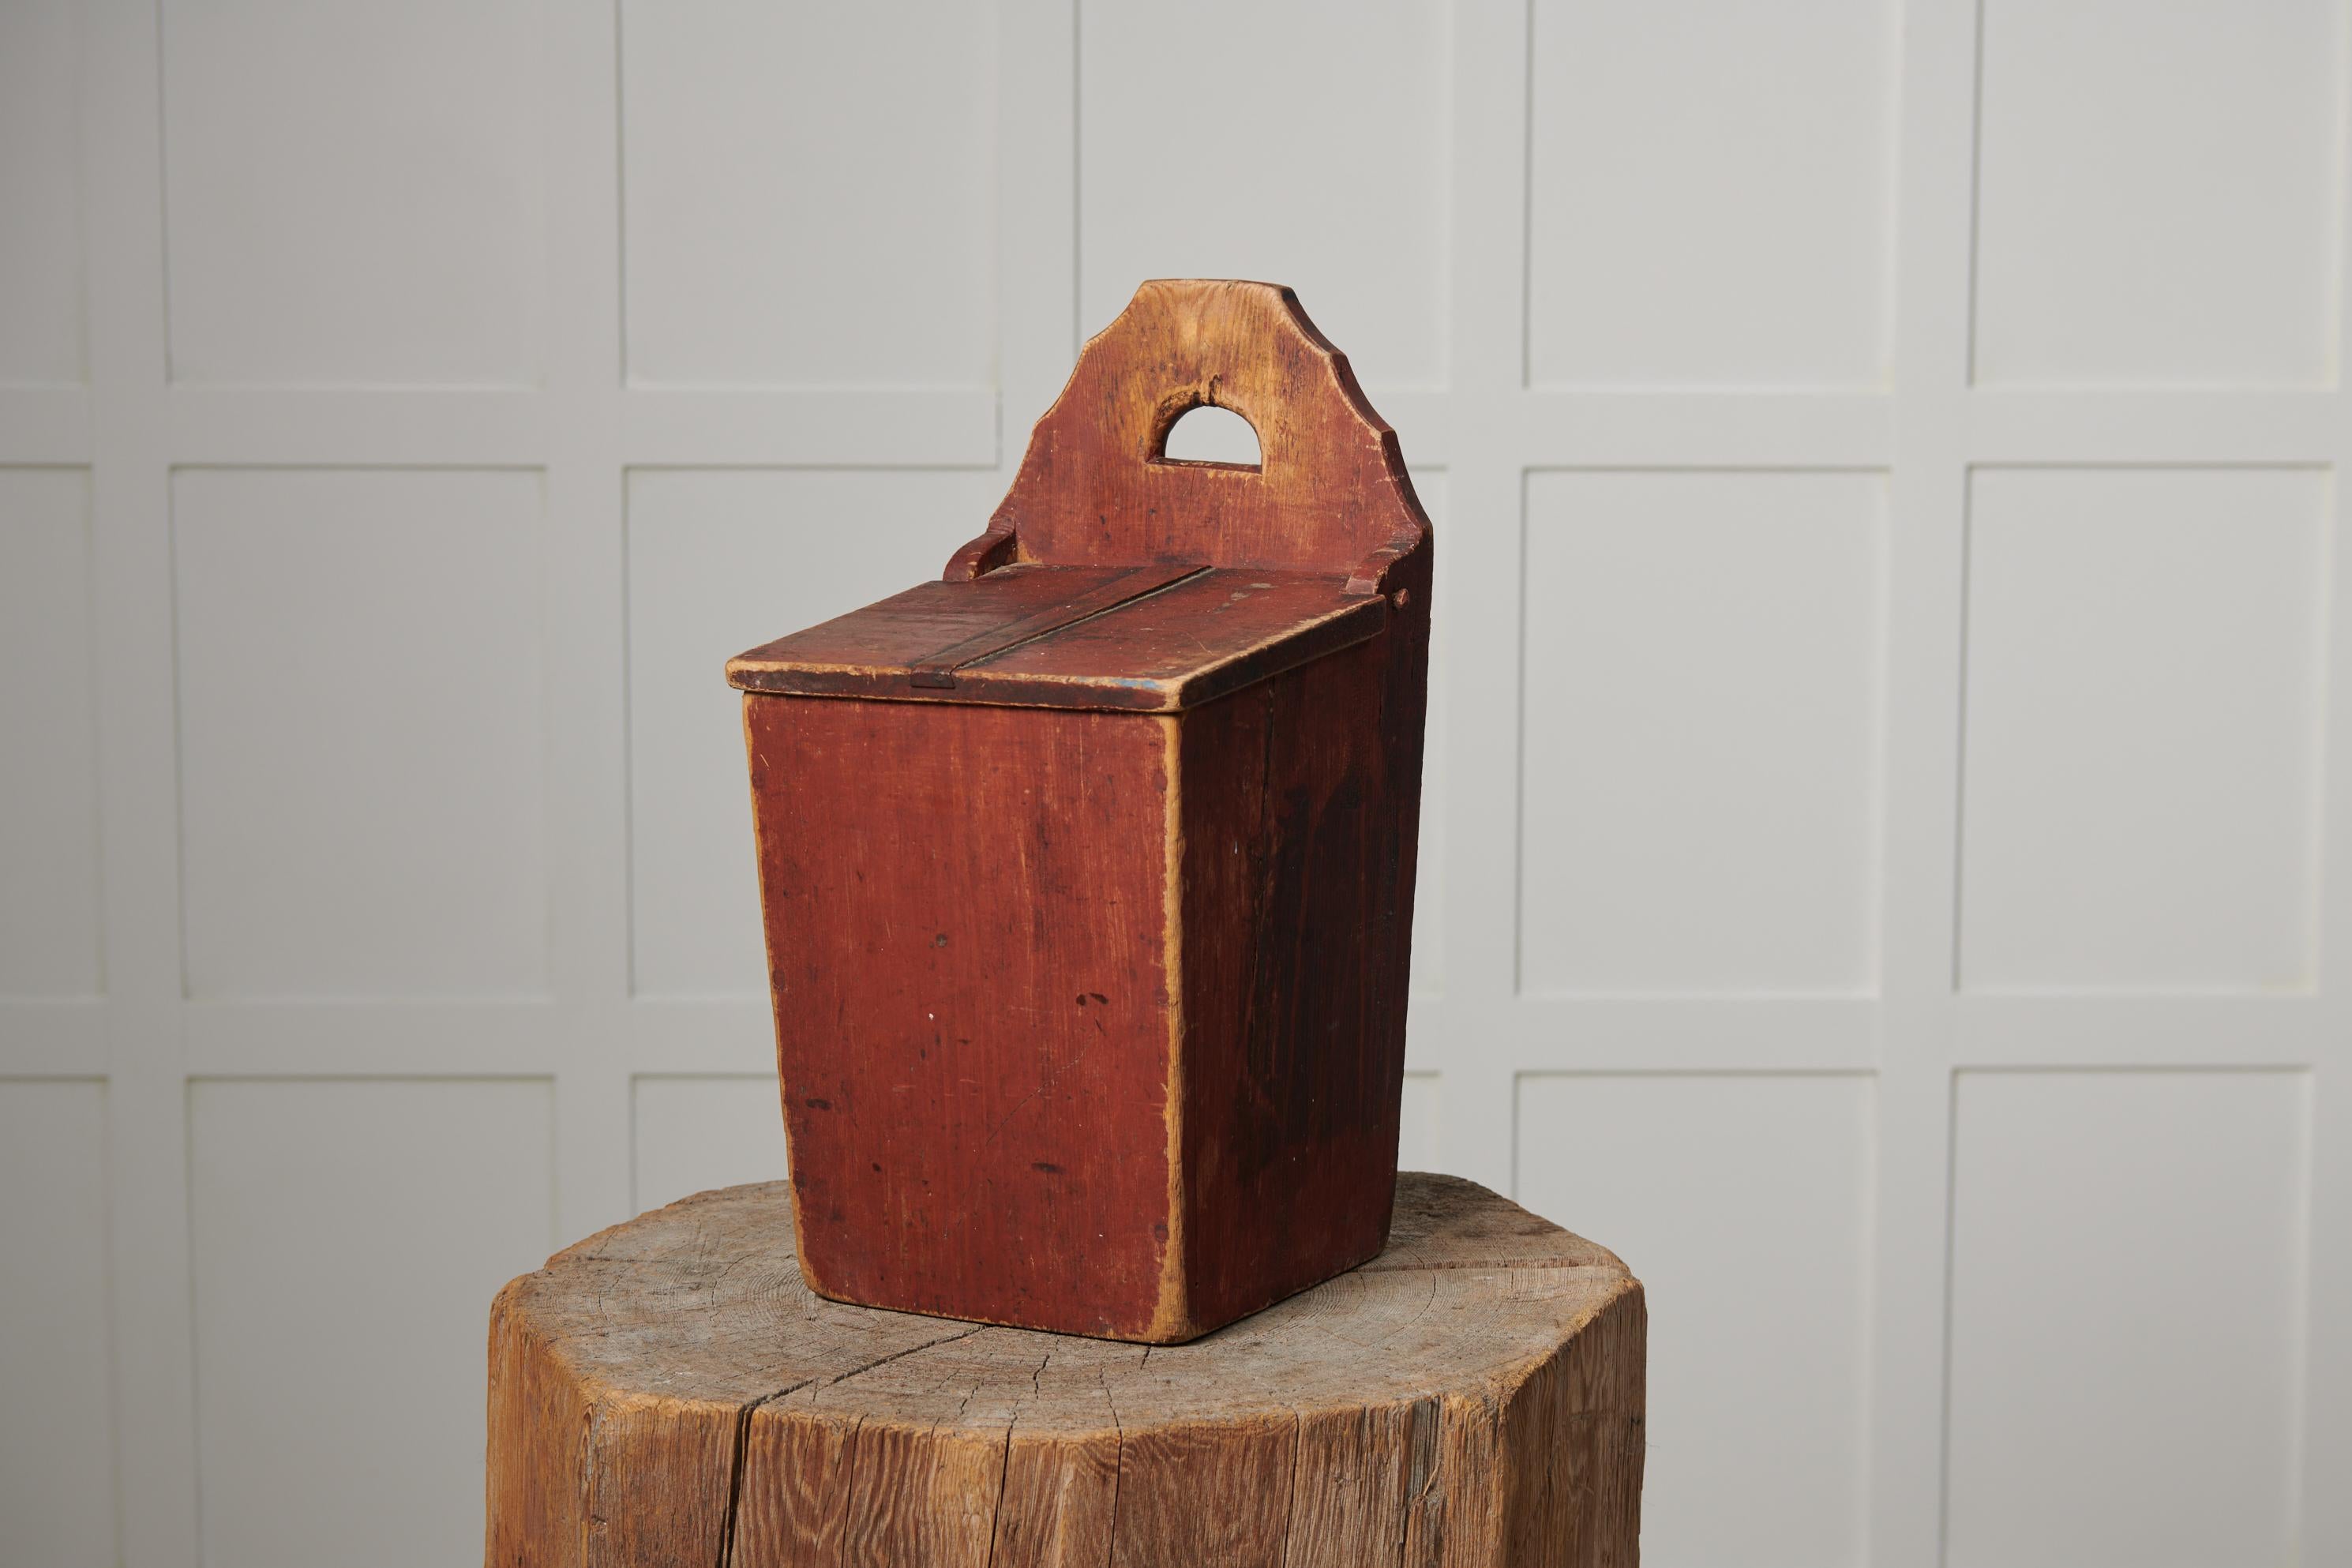 Boîte d'art populaire suédois fabriquée à la main en pin suédois massif. La boîte est en état d'origine avec la peinture d'origine intacte. Fabriqué dans le nord de la Suède vers les années 1860. Il a très probablement été utilisé à la maison pour